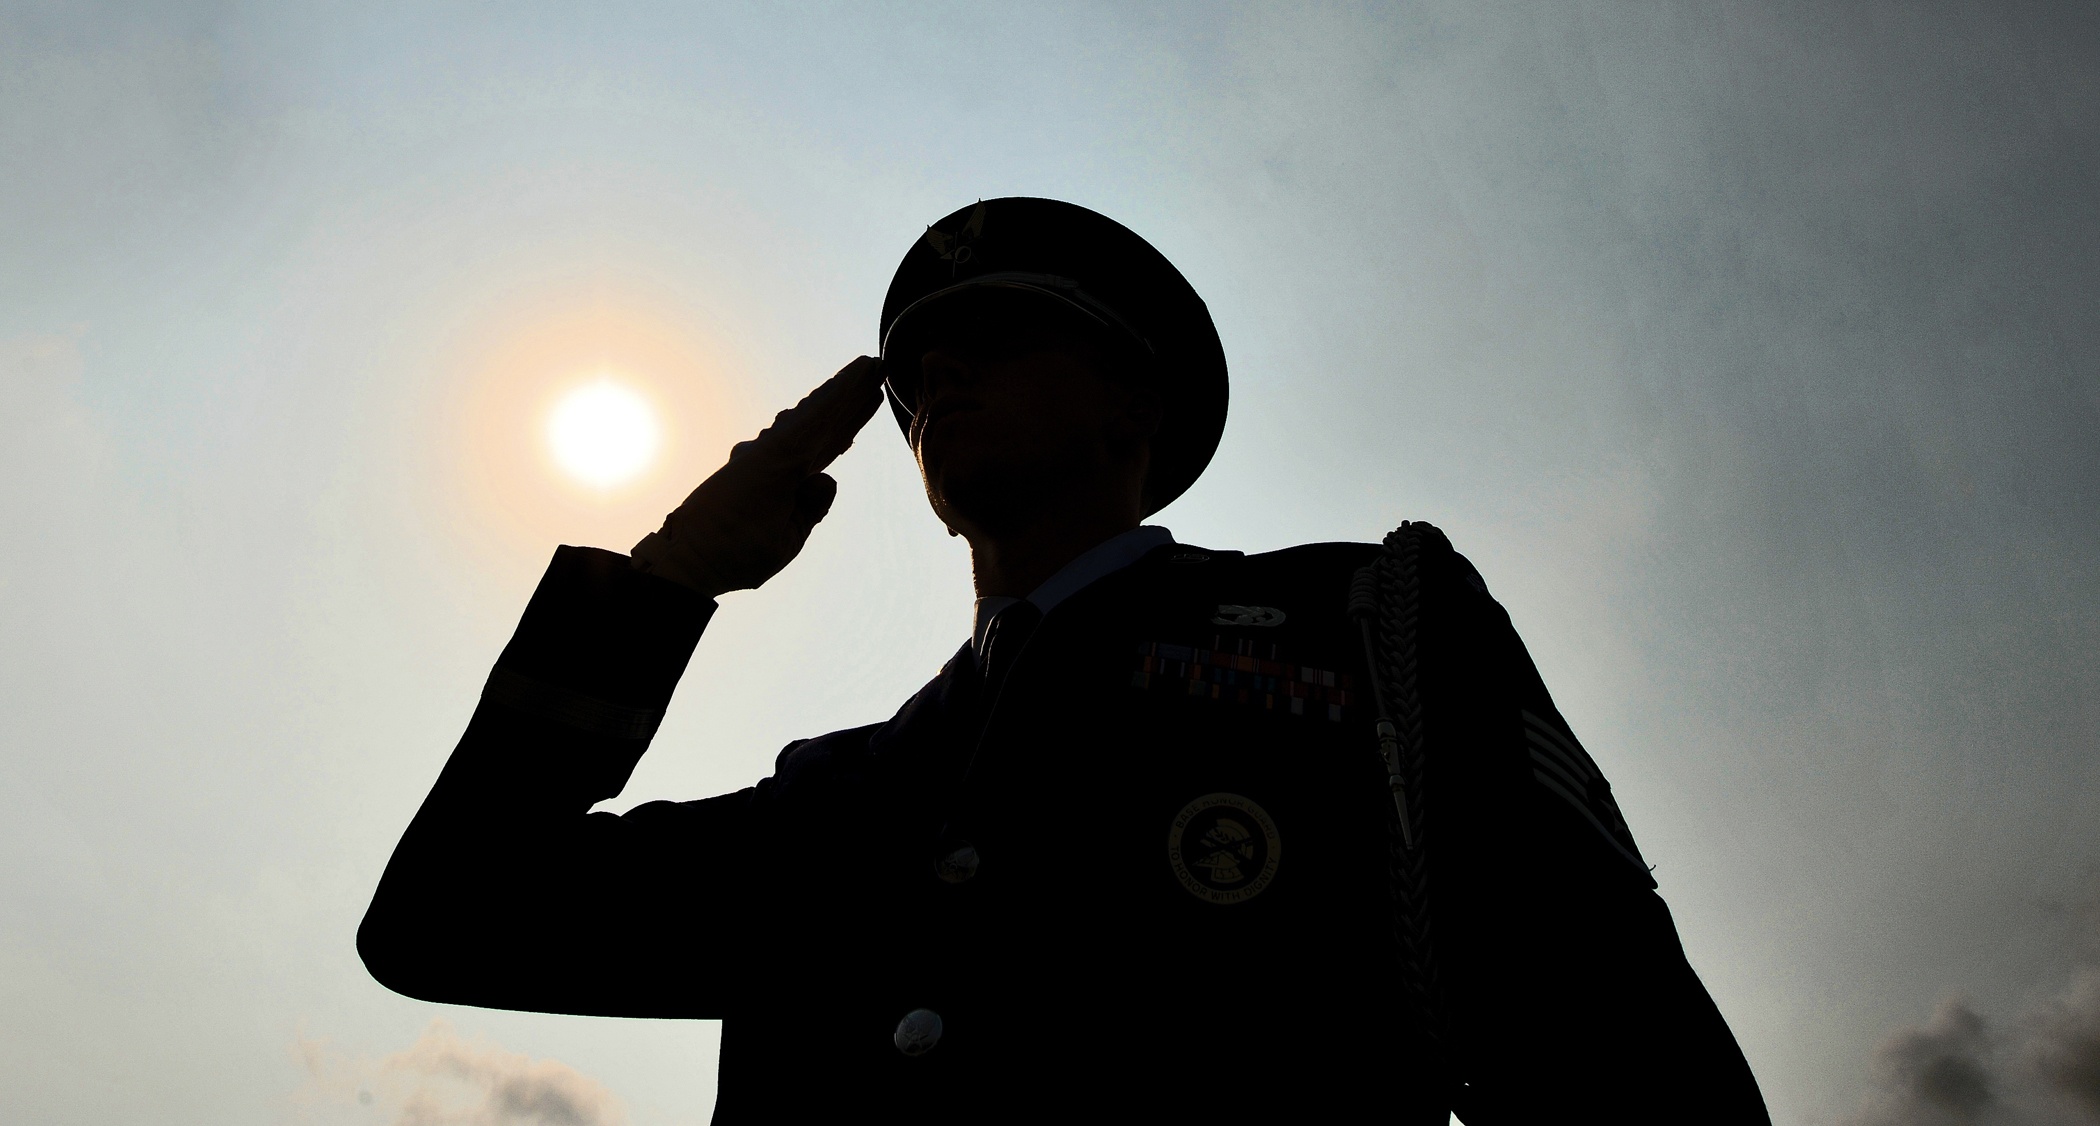 In honor: A veteran salutes